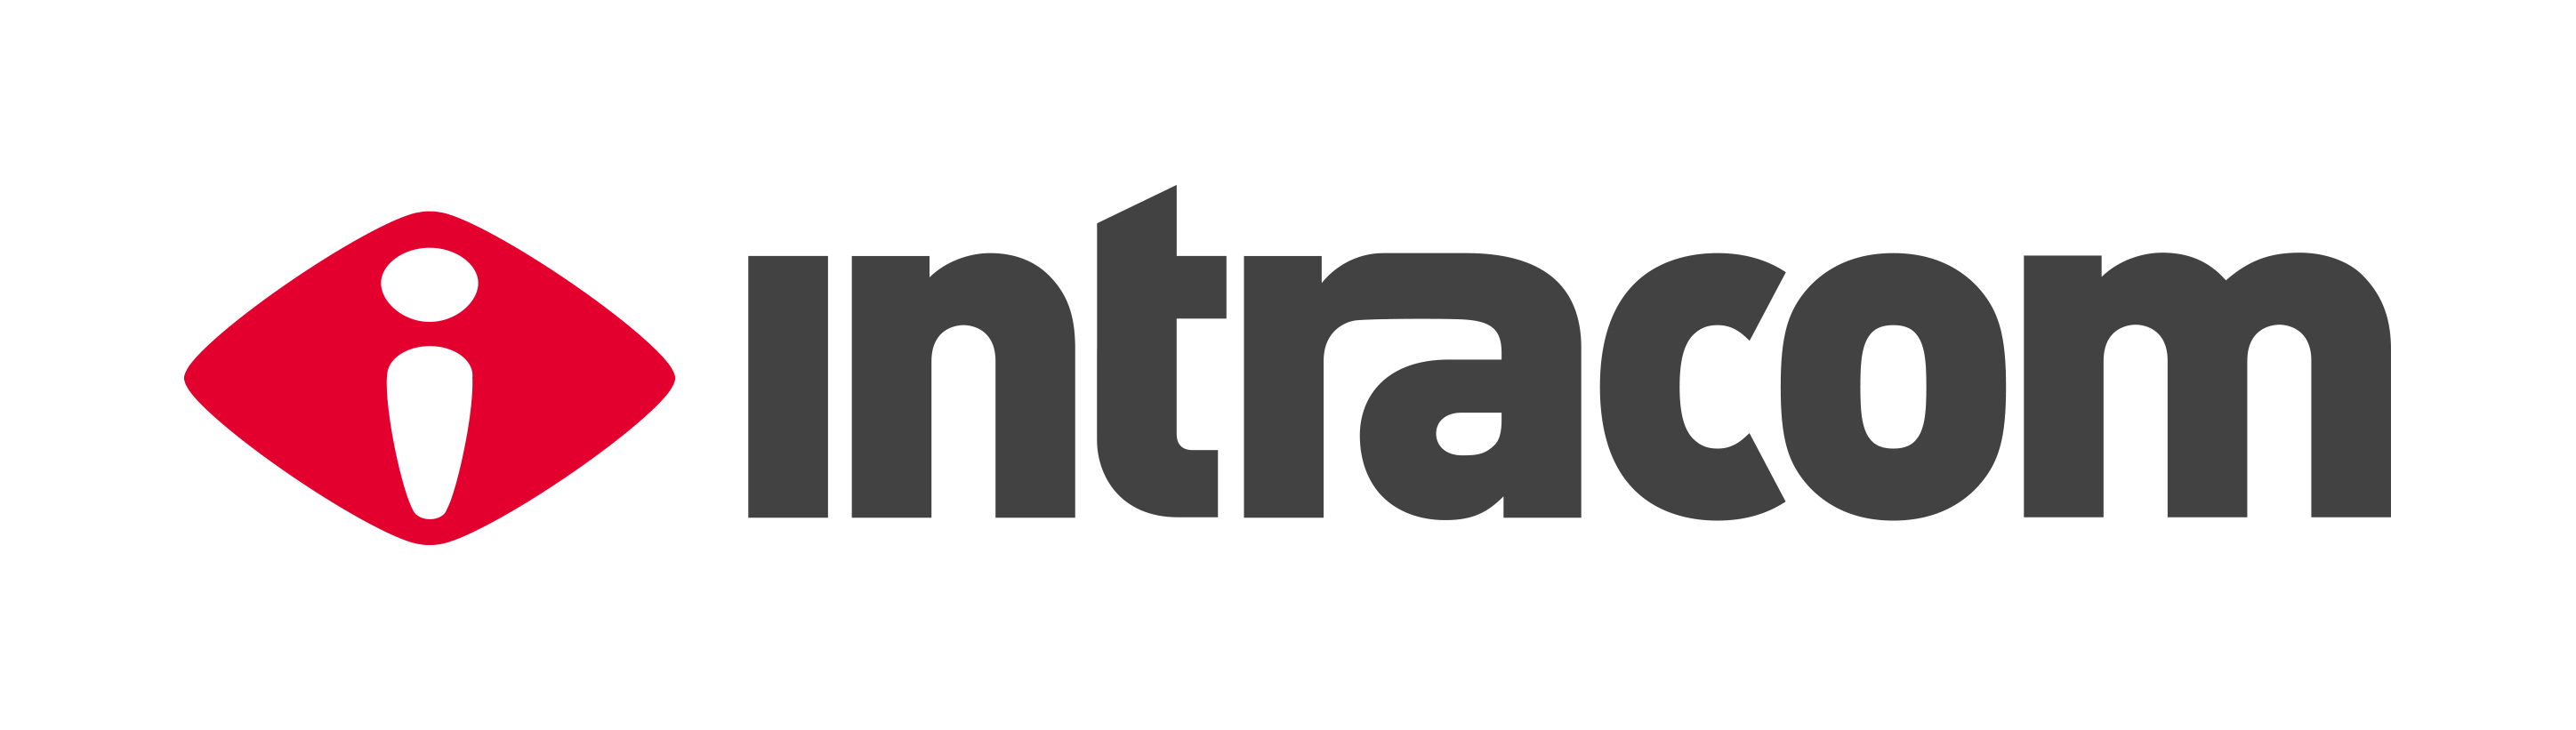 Intracom Brand Logo